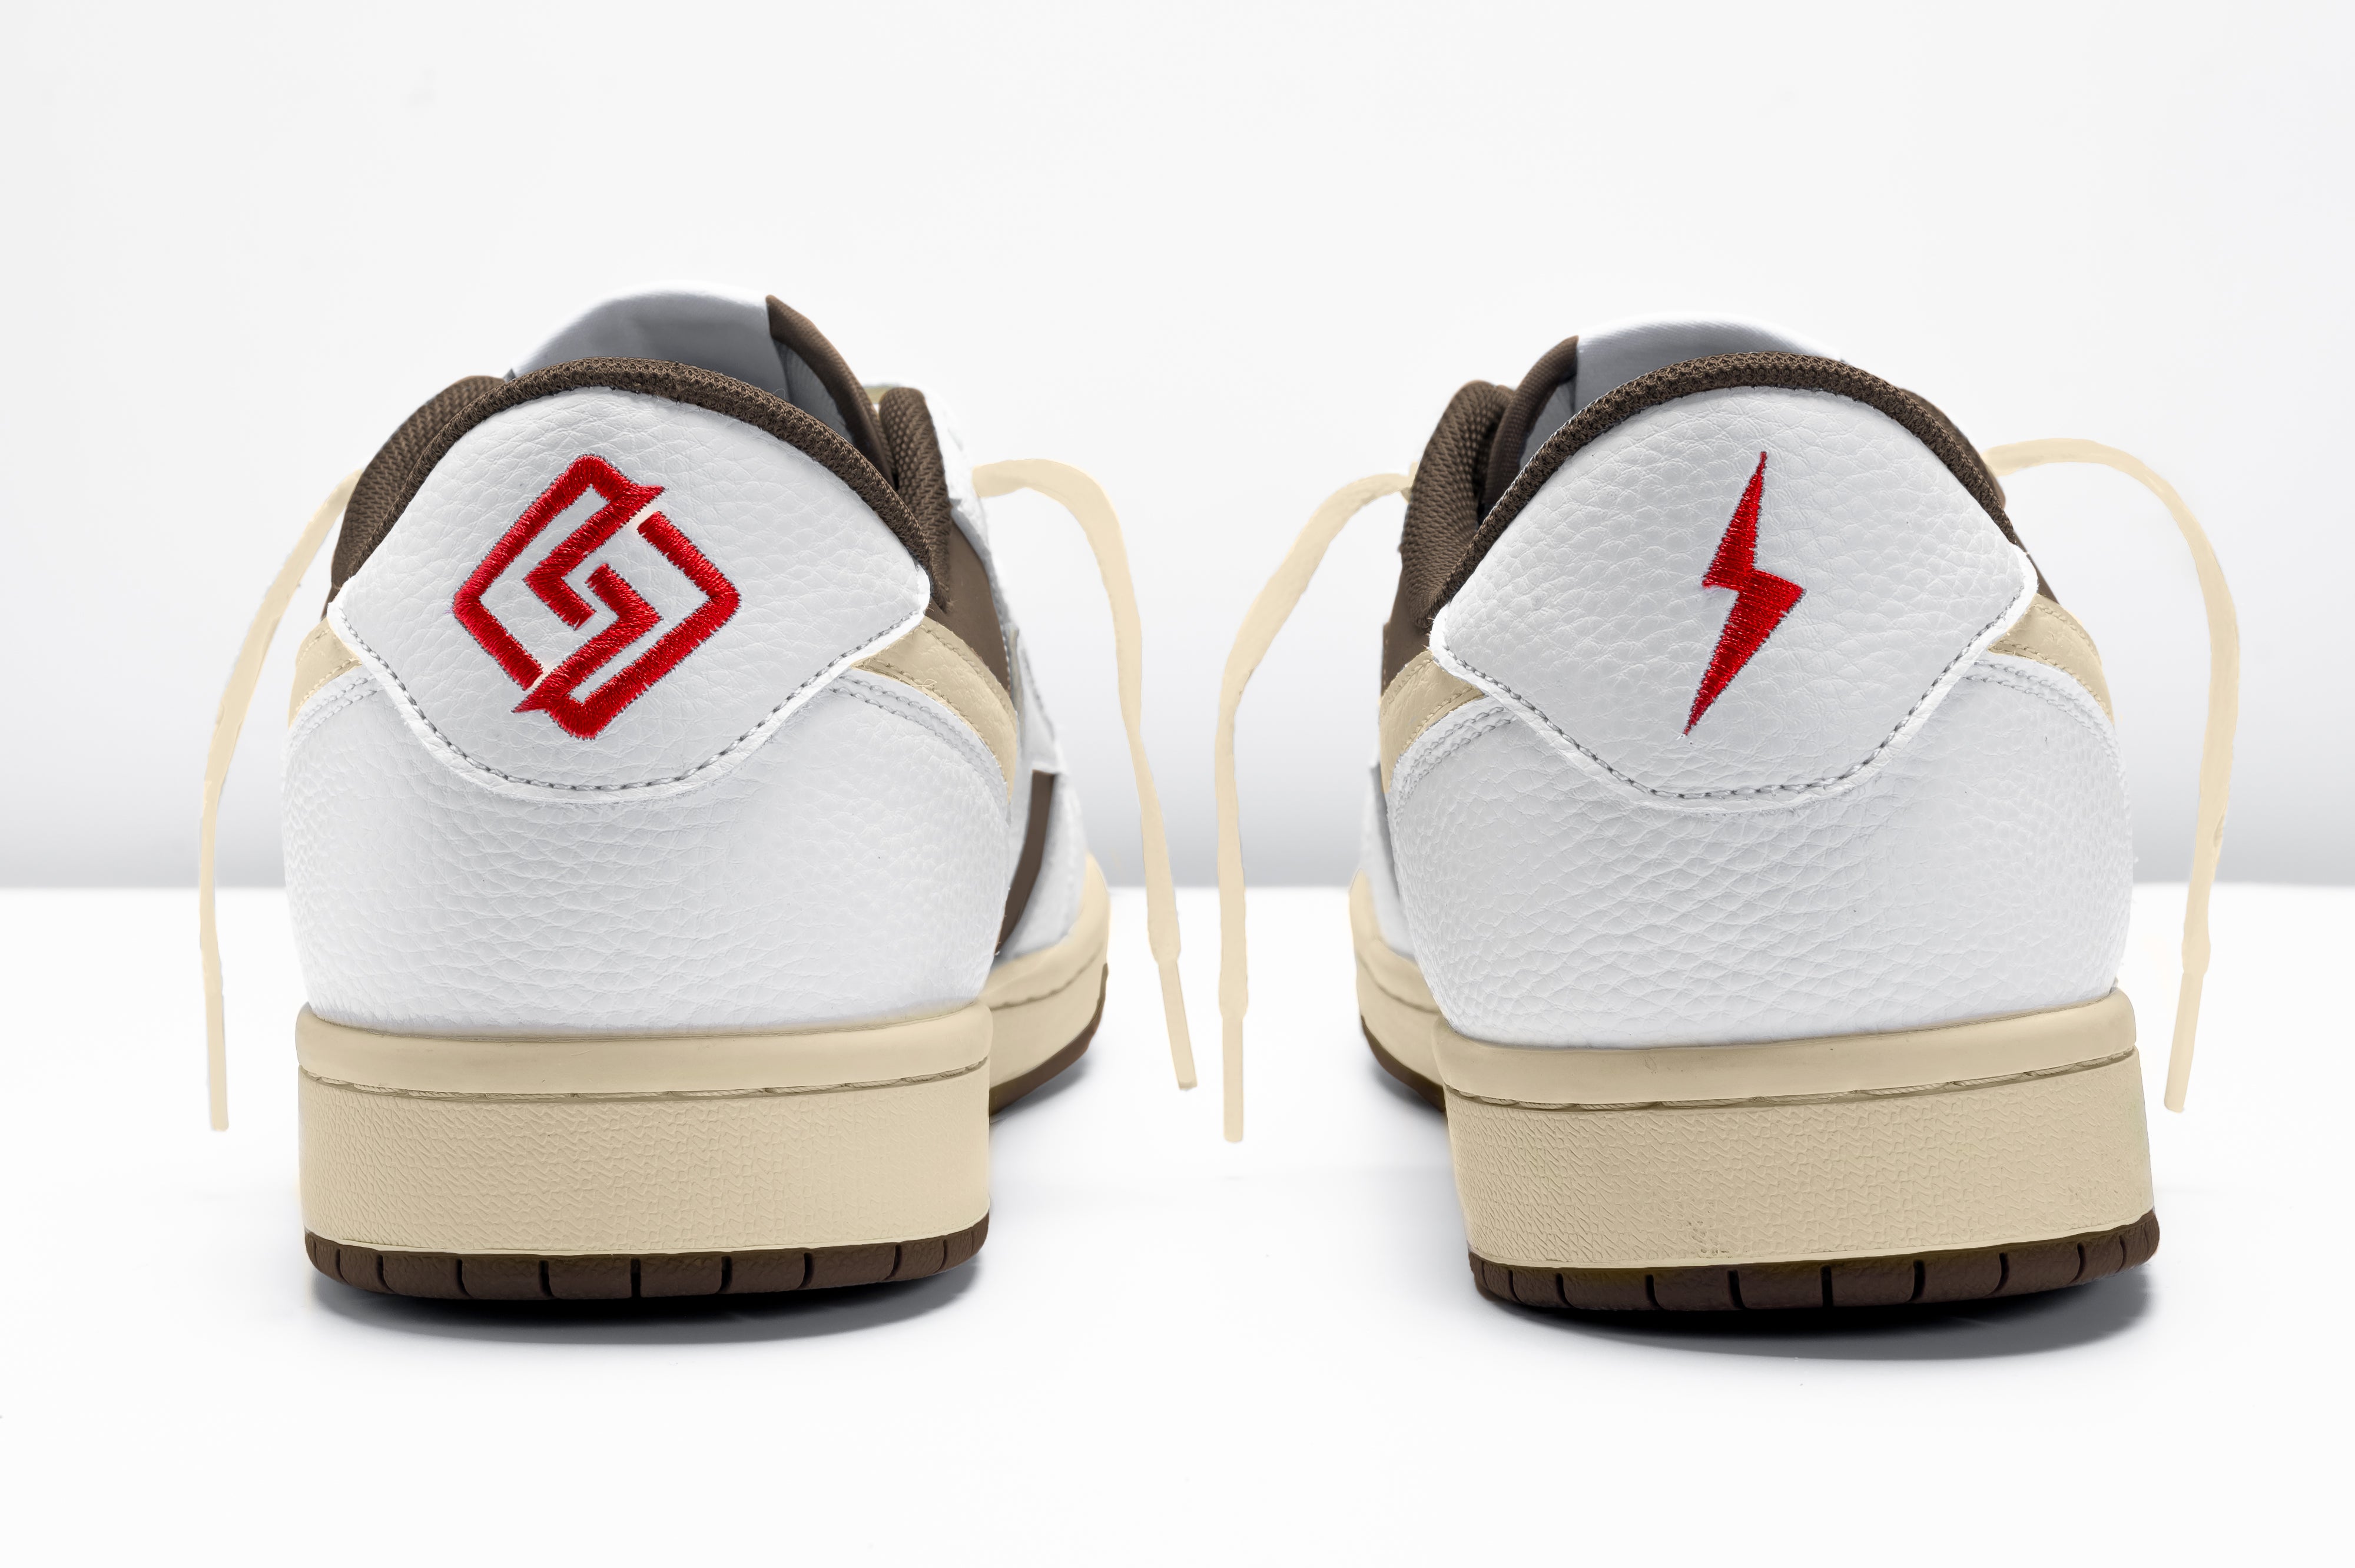 SNK Zeus Sneaker 